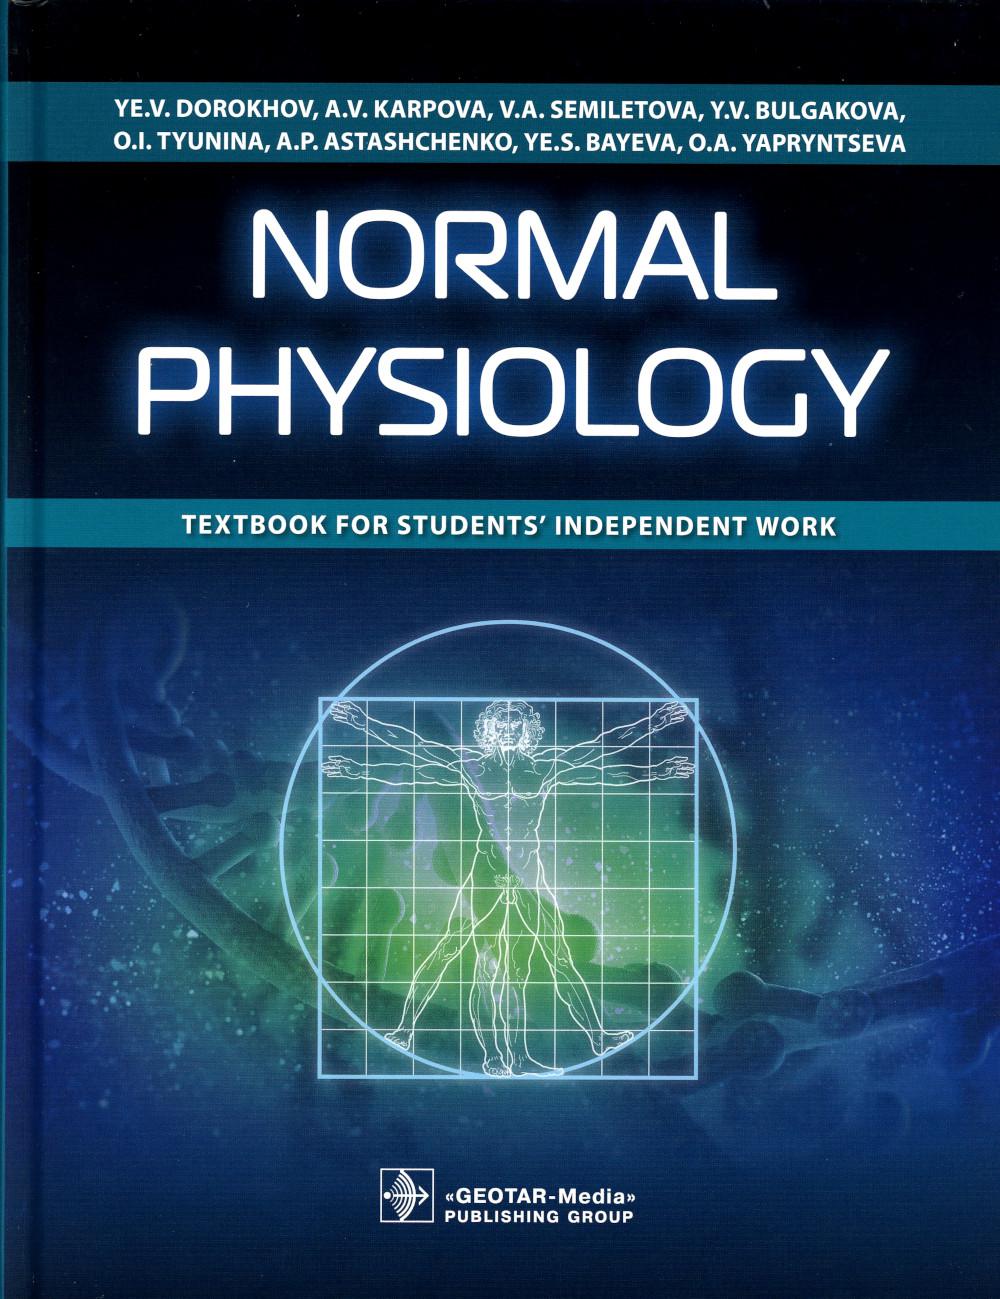 Normal physiology : textbook for students independent work / Ye. V. Dorokhov, A. V. Karpova, V. A. Semiletova [et al.].  oscow : GEOTAR-Media, 2021.  512 p. : ill.